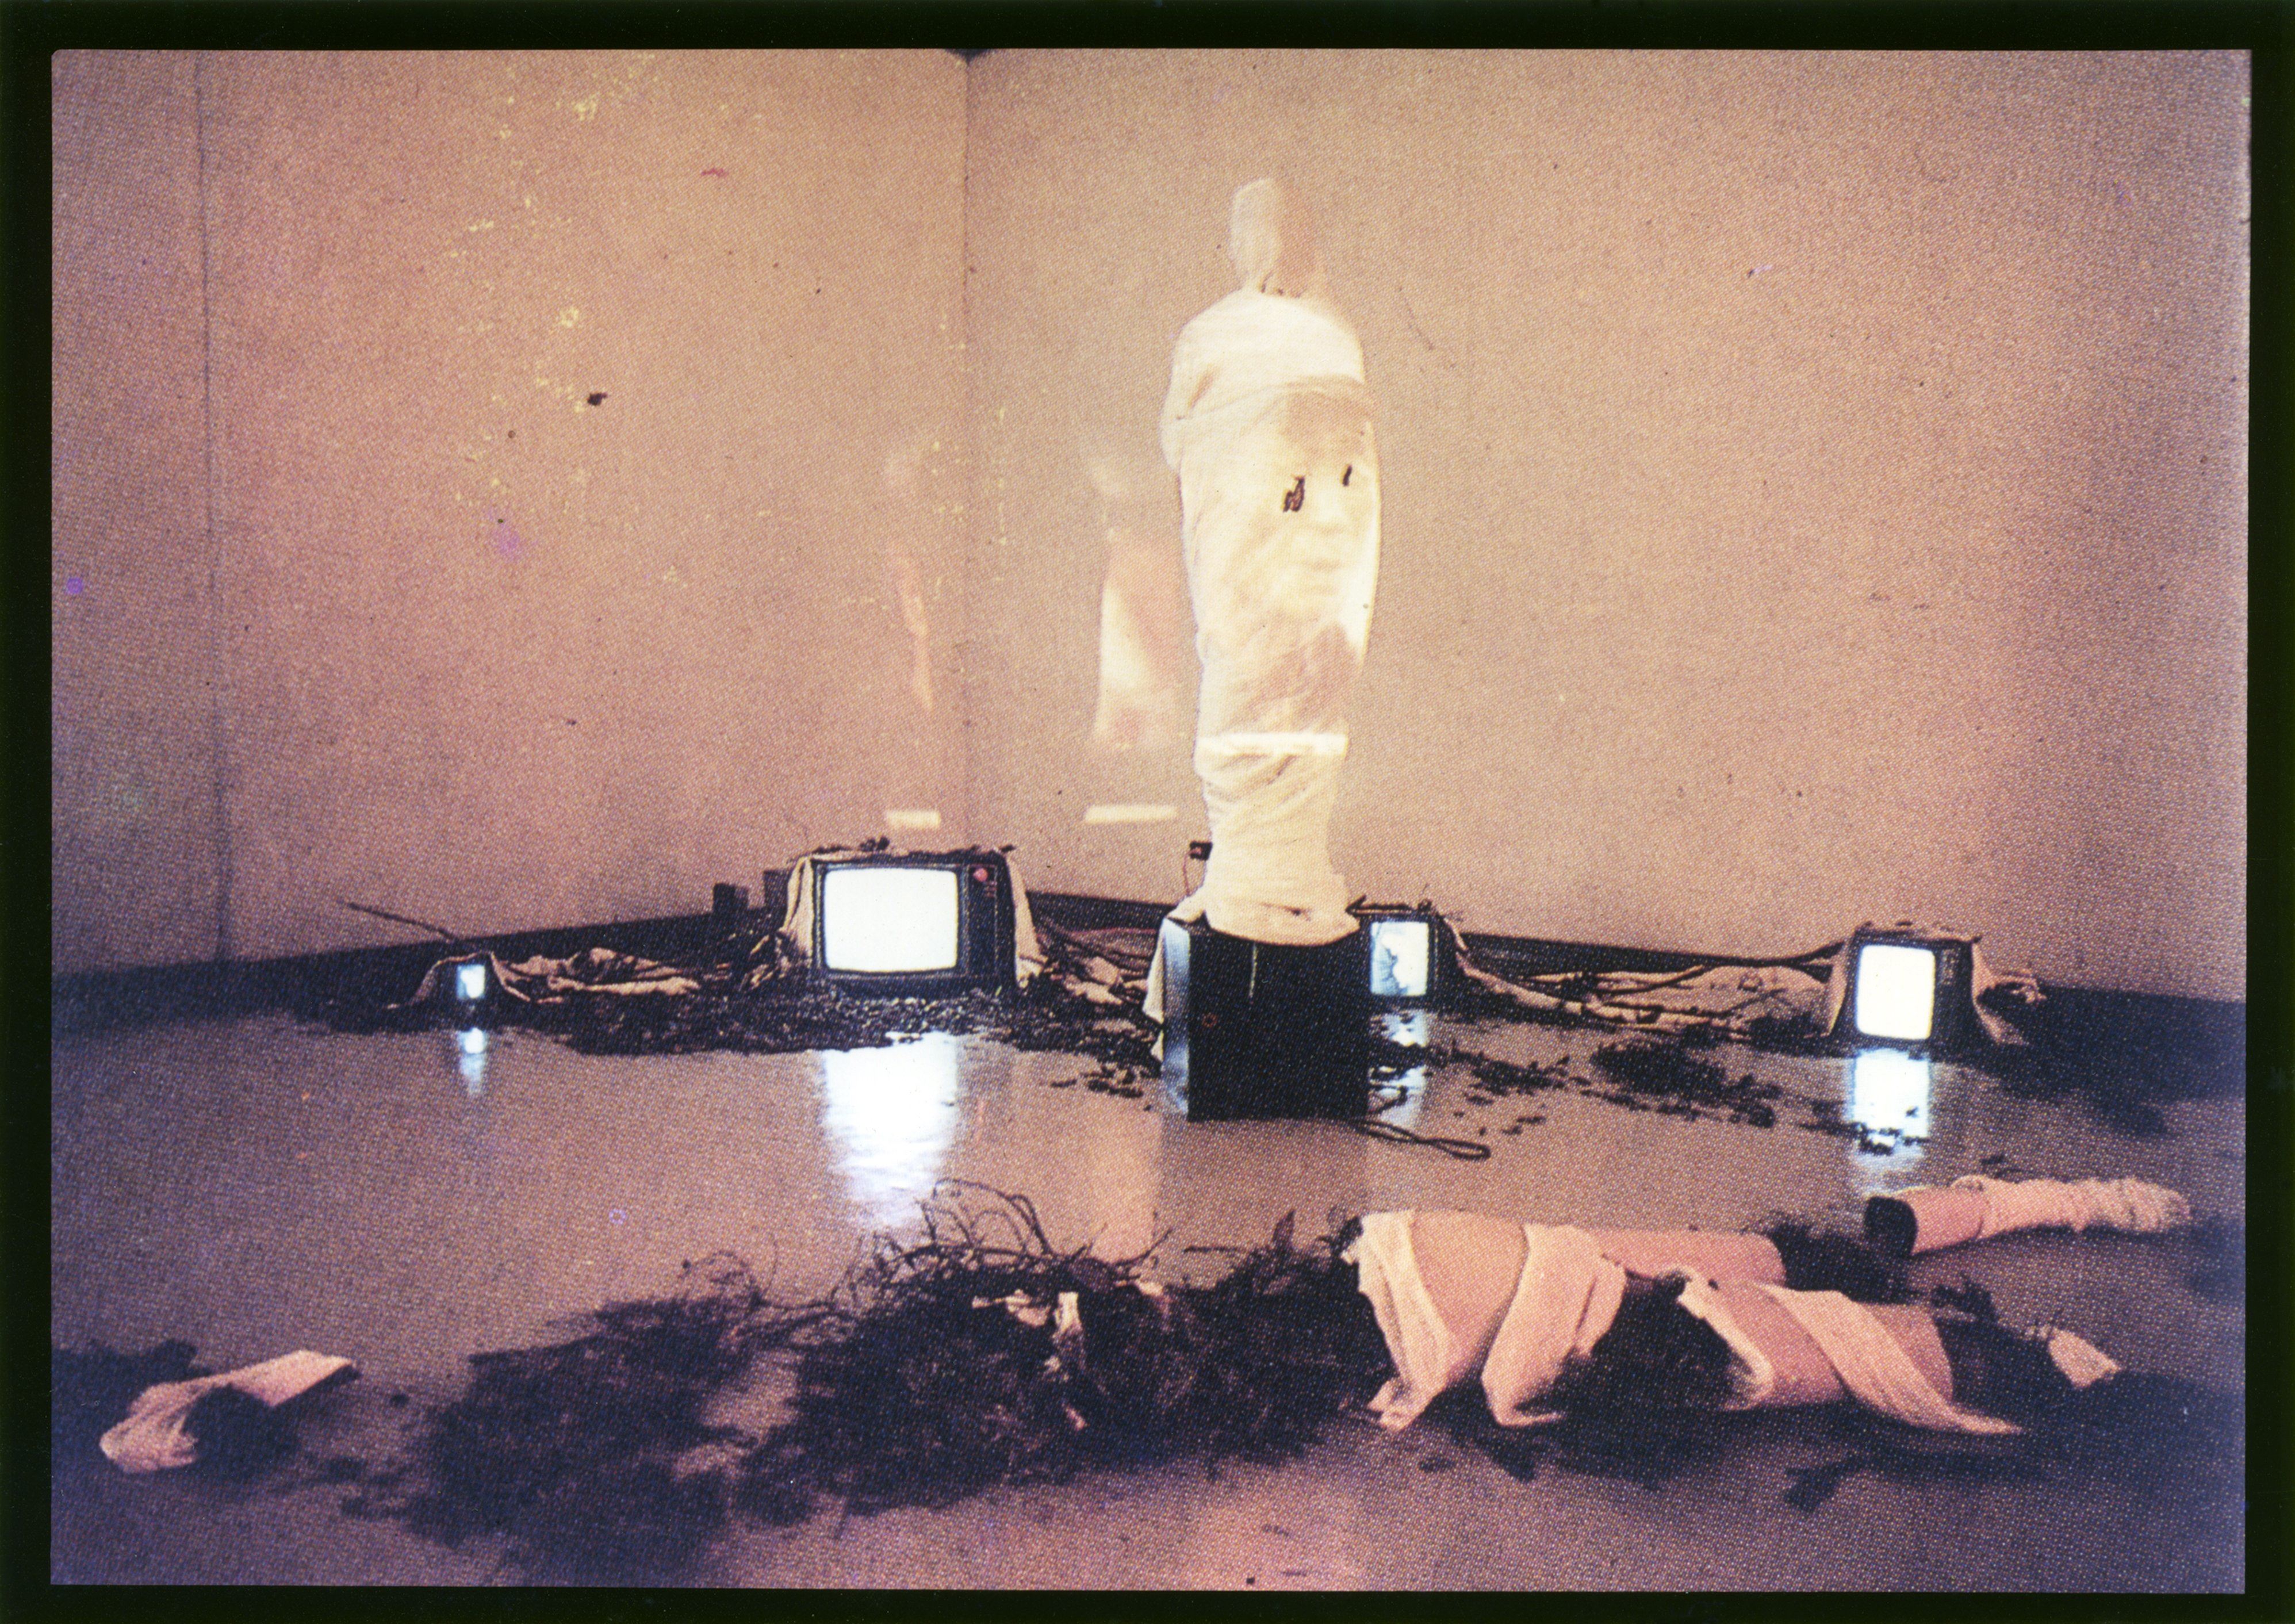 カク・イフン（グオ・イーフェン／郭挹芬）、ロ・メトク（ルー・ミンドー／盧明德） 《サイレント・ボディー》 1987年 パフォーマンス、5チャンネル・ビデオ（白黒、サイレント）、CRTモニター、枝、白い布 サイズ可変 展示風景：「実験芸術：アクション・スペース」台北市立美術館、1987年